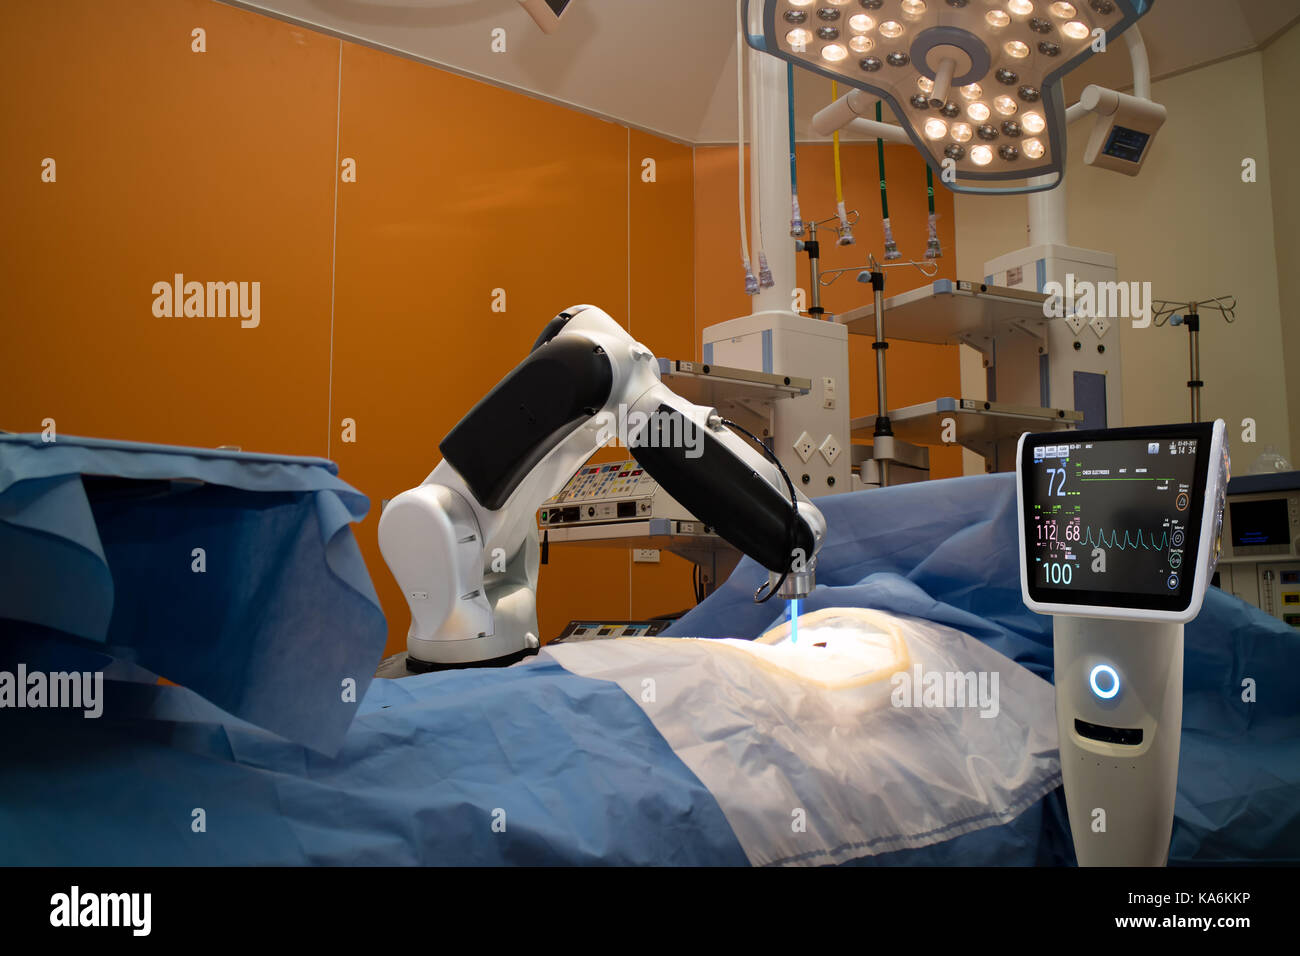 Erweiterte Roboterchirurgie Maschine am Krankenhaus, einige der wichtigsten Vorteile der Roboterchirurgie sind Präzision und Miniaturisierung, kleinere Schnitte, weniger Stockfoto